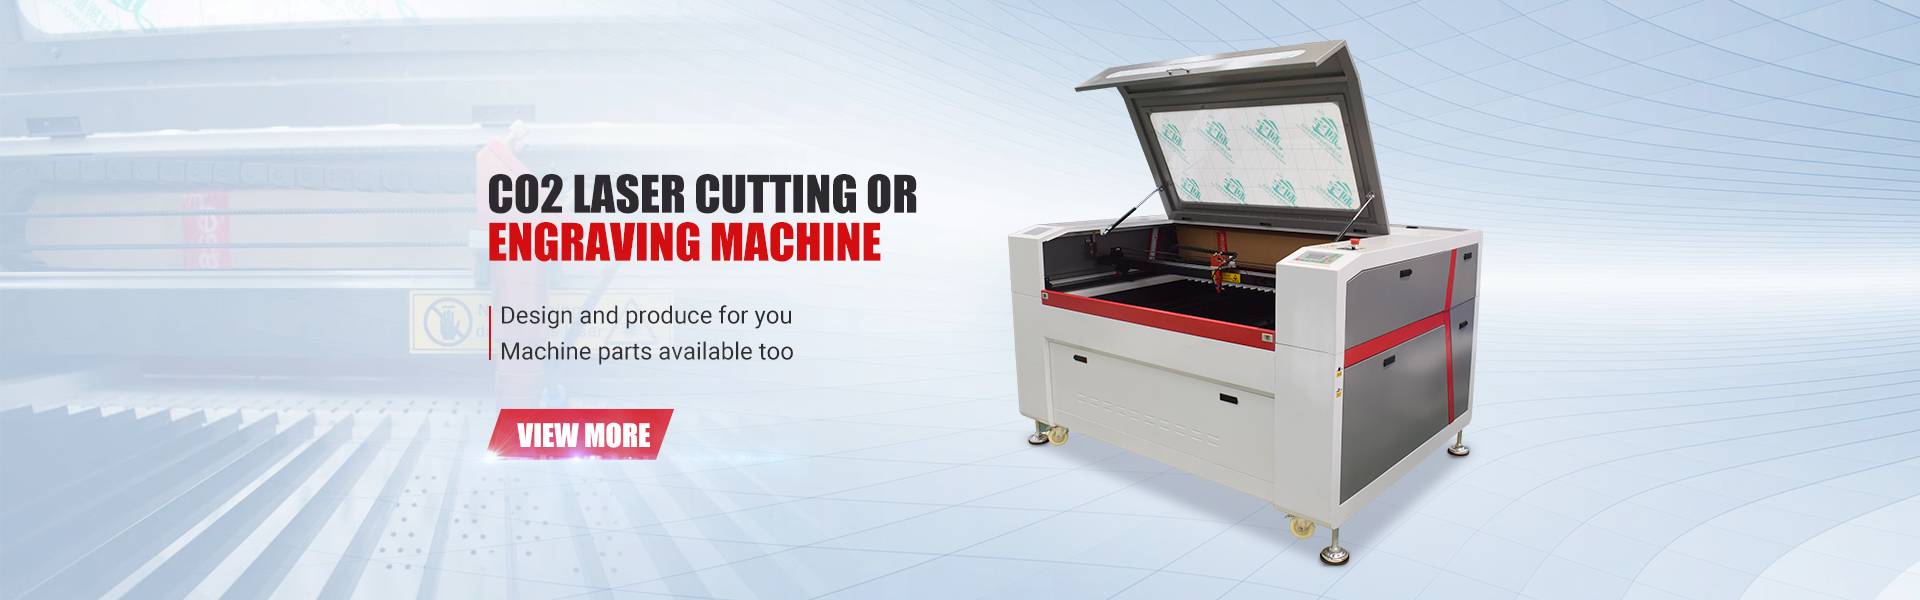 Top Seller CNC Metal Cutting Engraving Carving Machine 6090